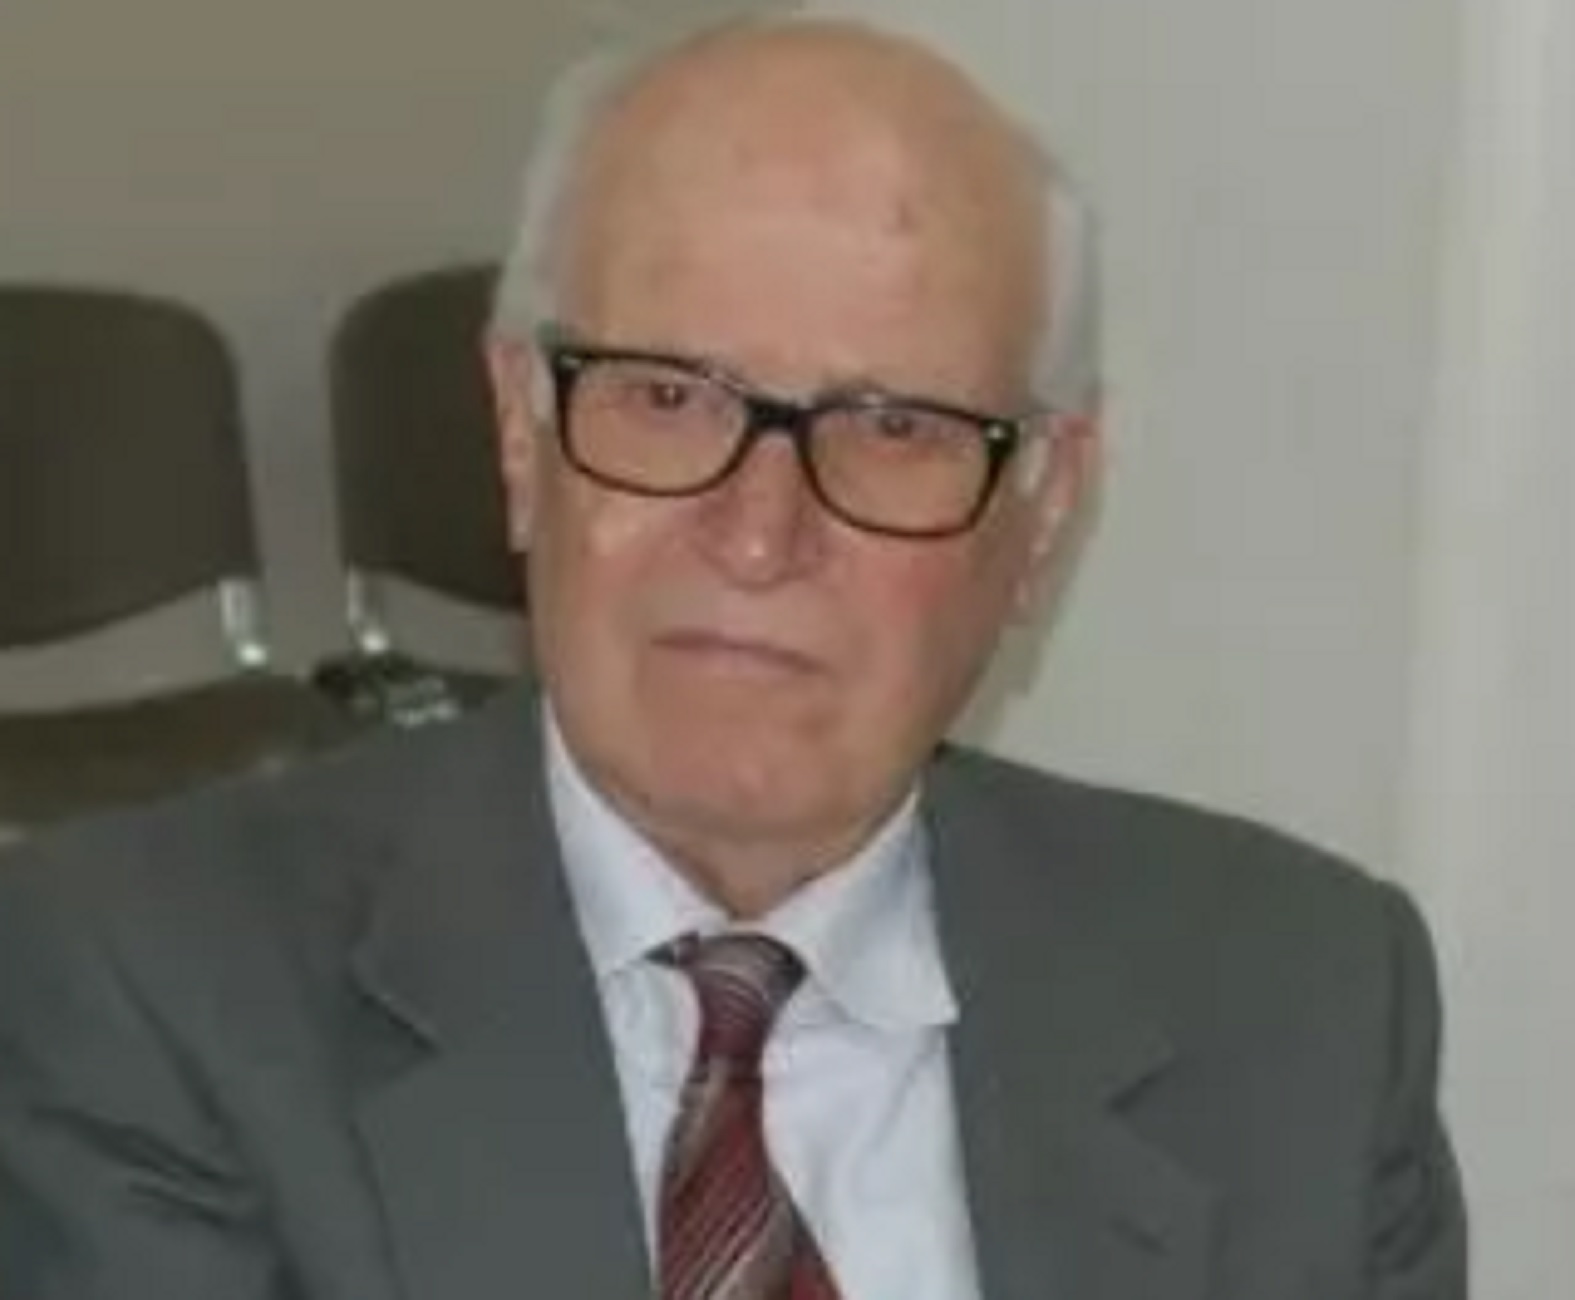 Πέθανε από πνευμονικό οίδημα ο πρώην βουλευτής της Νέας Δημοκρατίας Νίκος Καλλές